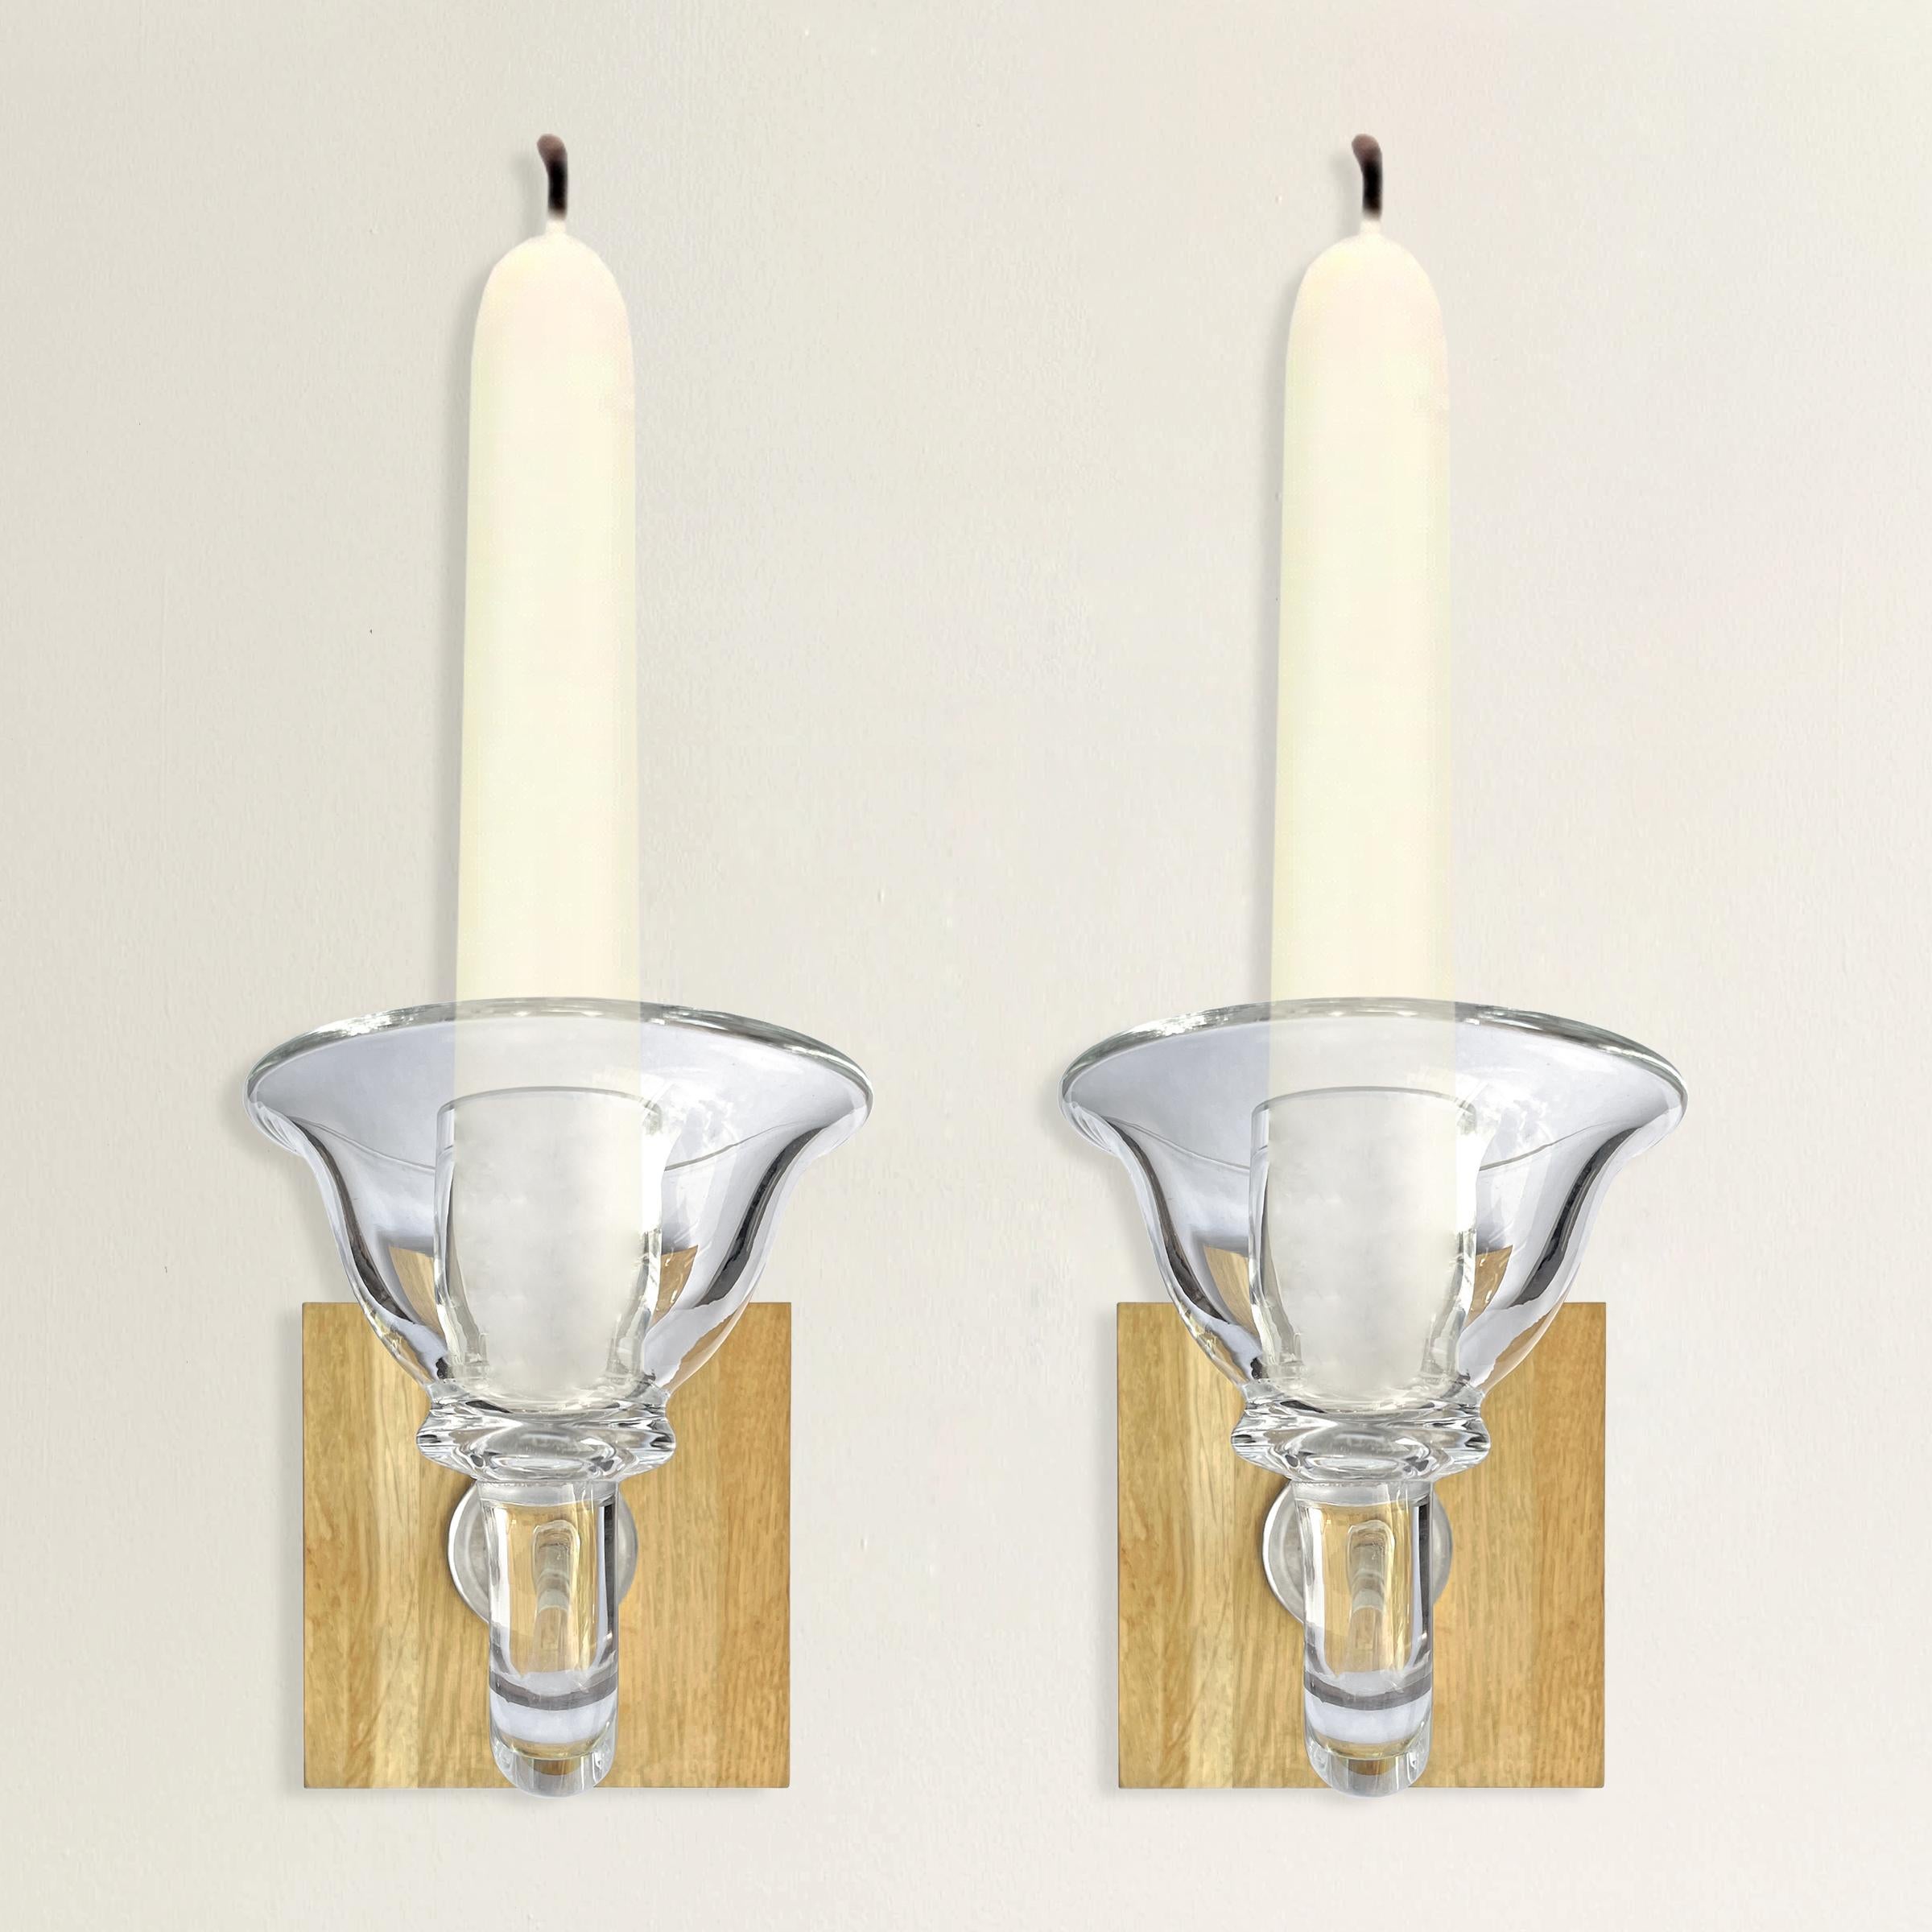 Ein schickes Paar belgischer Kerzenleuchter aus mundgeblasenem Glas mit breiten Bögen und geschwungenen Armen, montiert an einer modernen Wandhalterung aus Eichenholz. Auf jedem Arm ist 